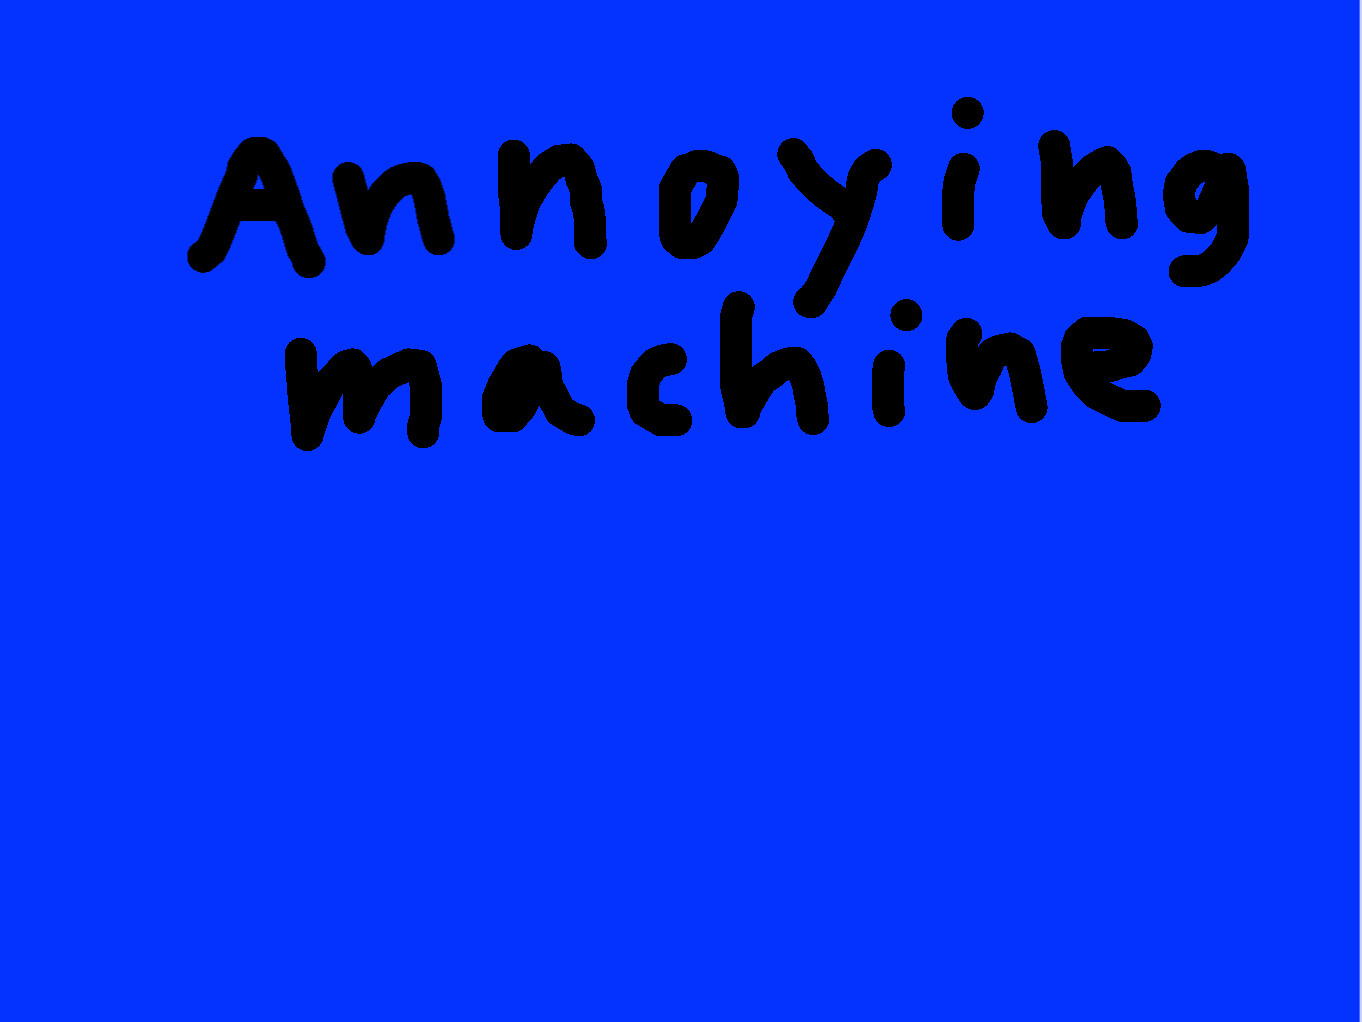 The annoying machine!!! 1